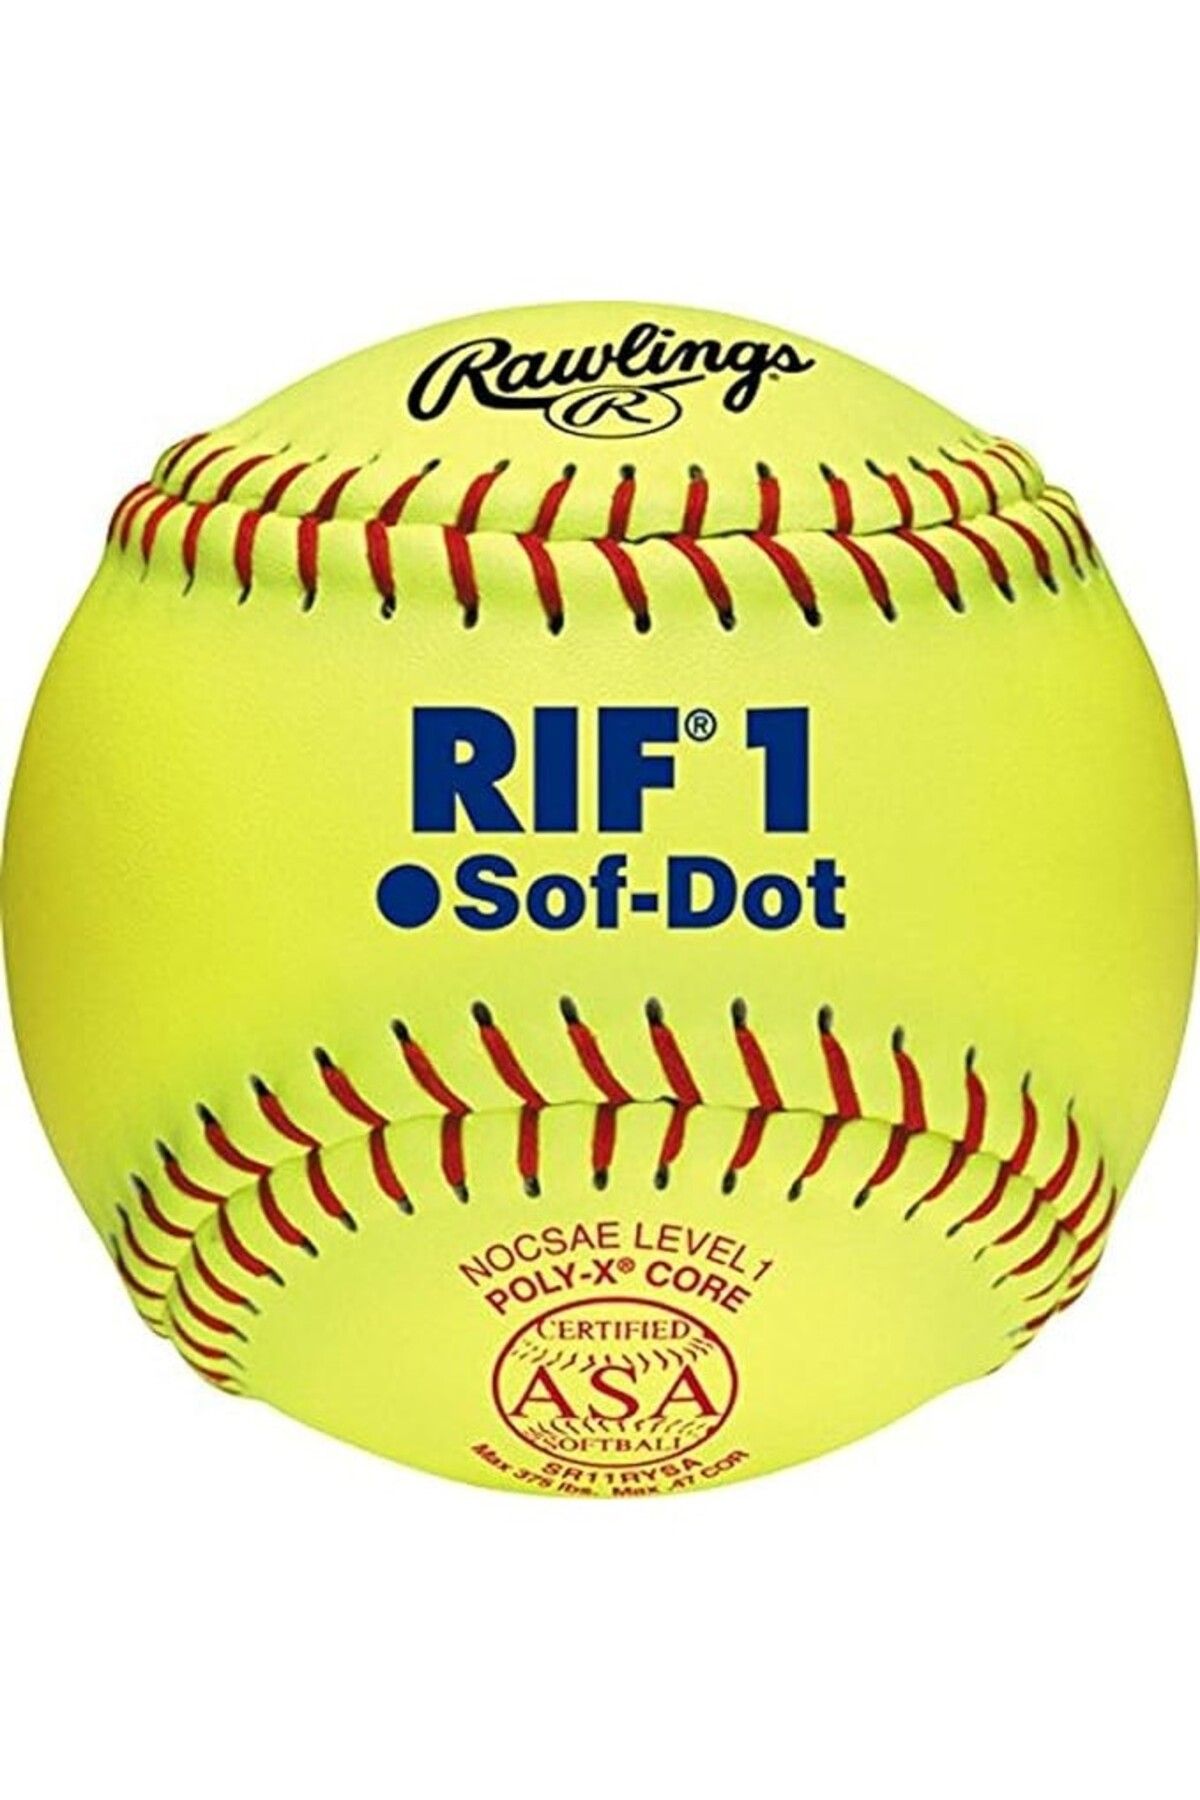 rawlings Rif1 Sof-dot Beyzbol- Softbol(SOFTBALL) Topu-sr10rysa